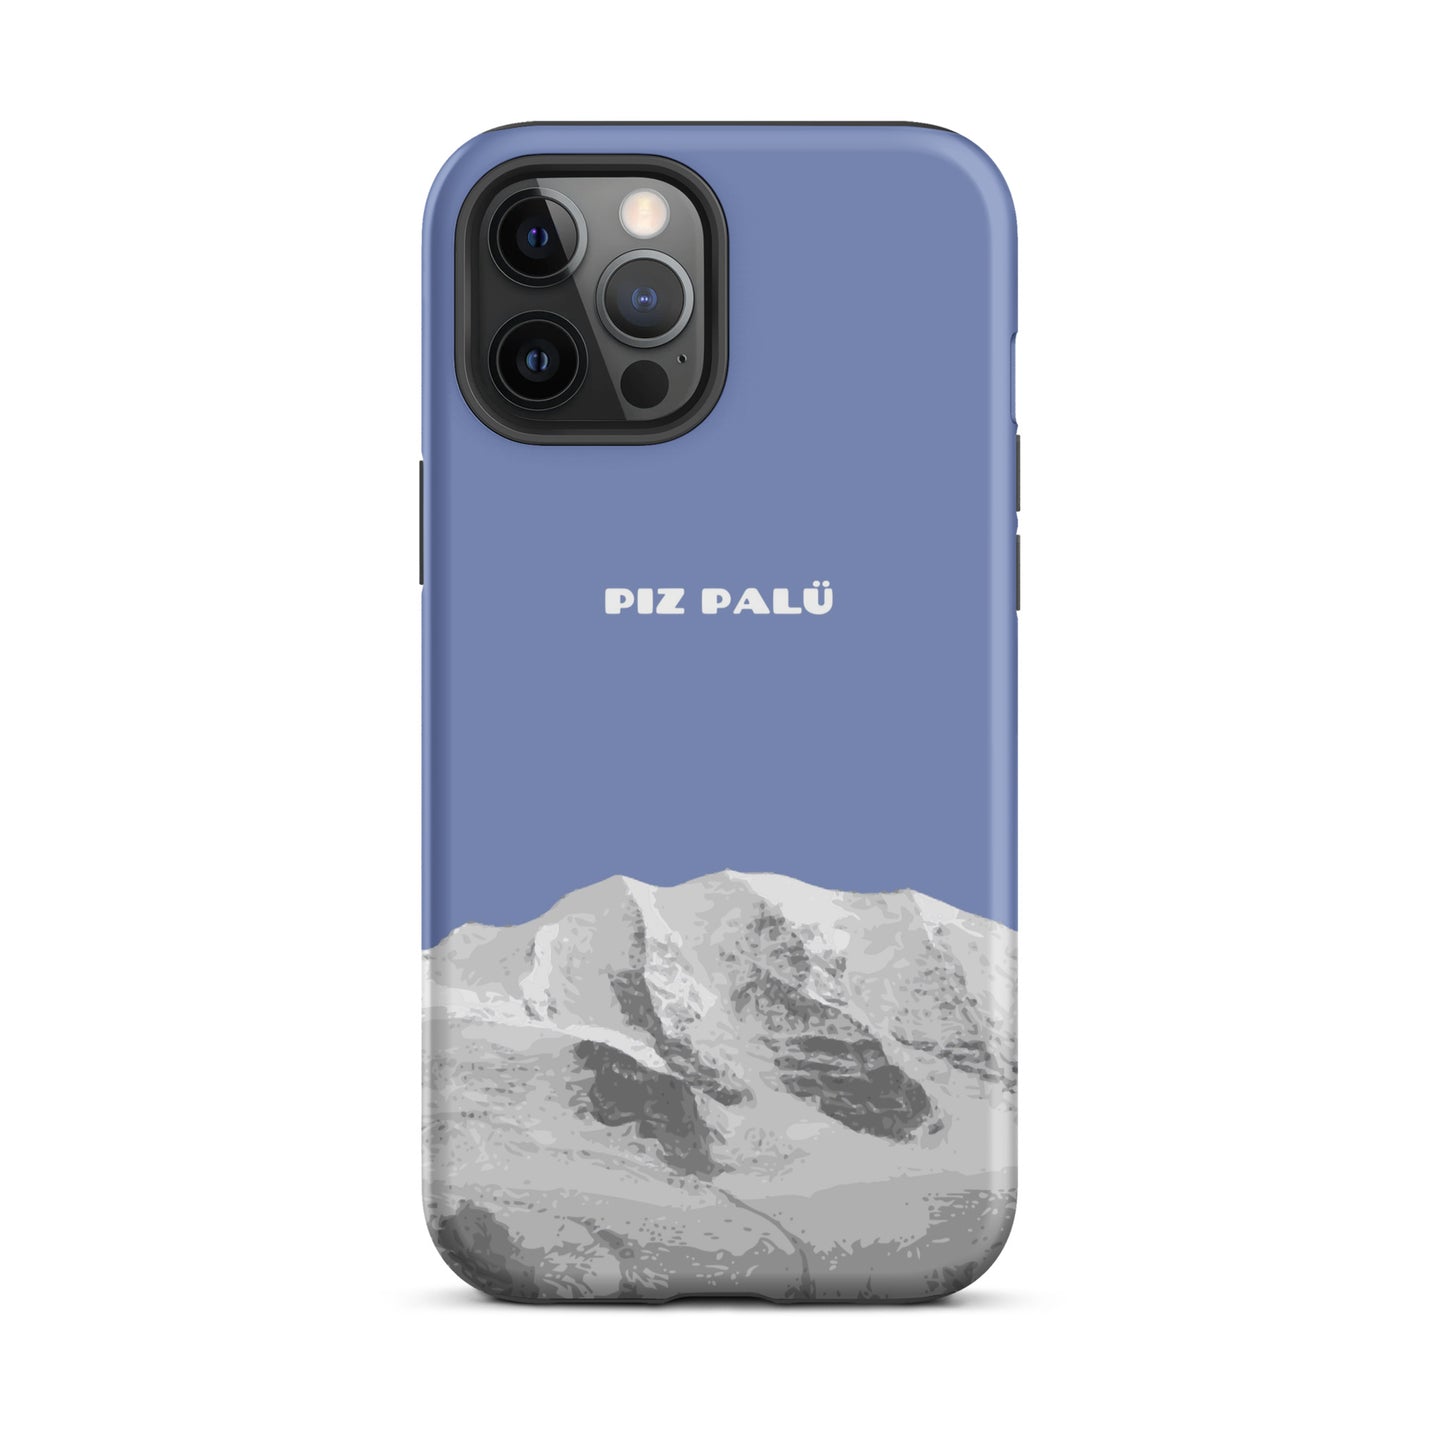 Hülle für das iPhone 12 Pro Max von Apple in der Farbe Pastellblau, dass den Piz Palü in Graubünden zeigt.